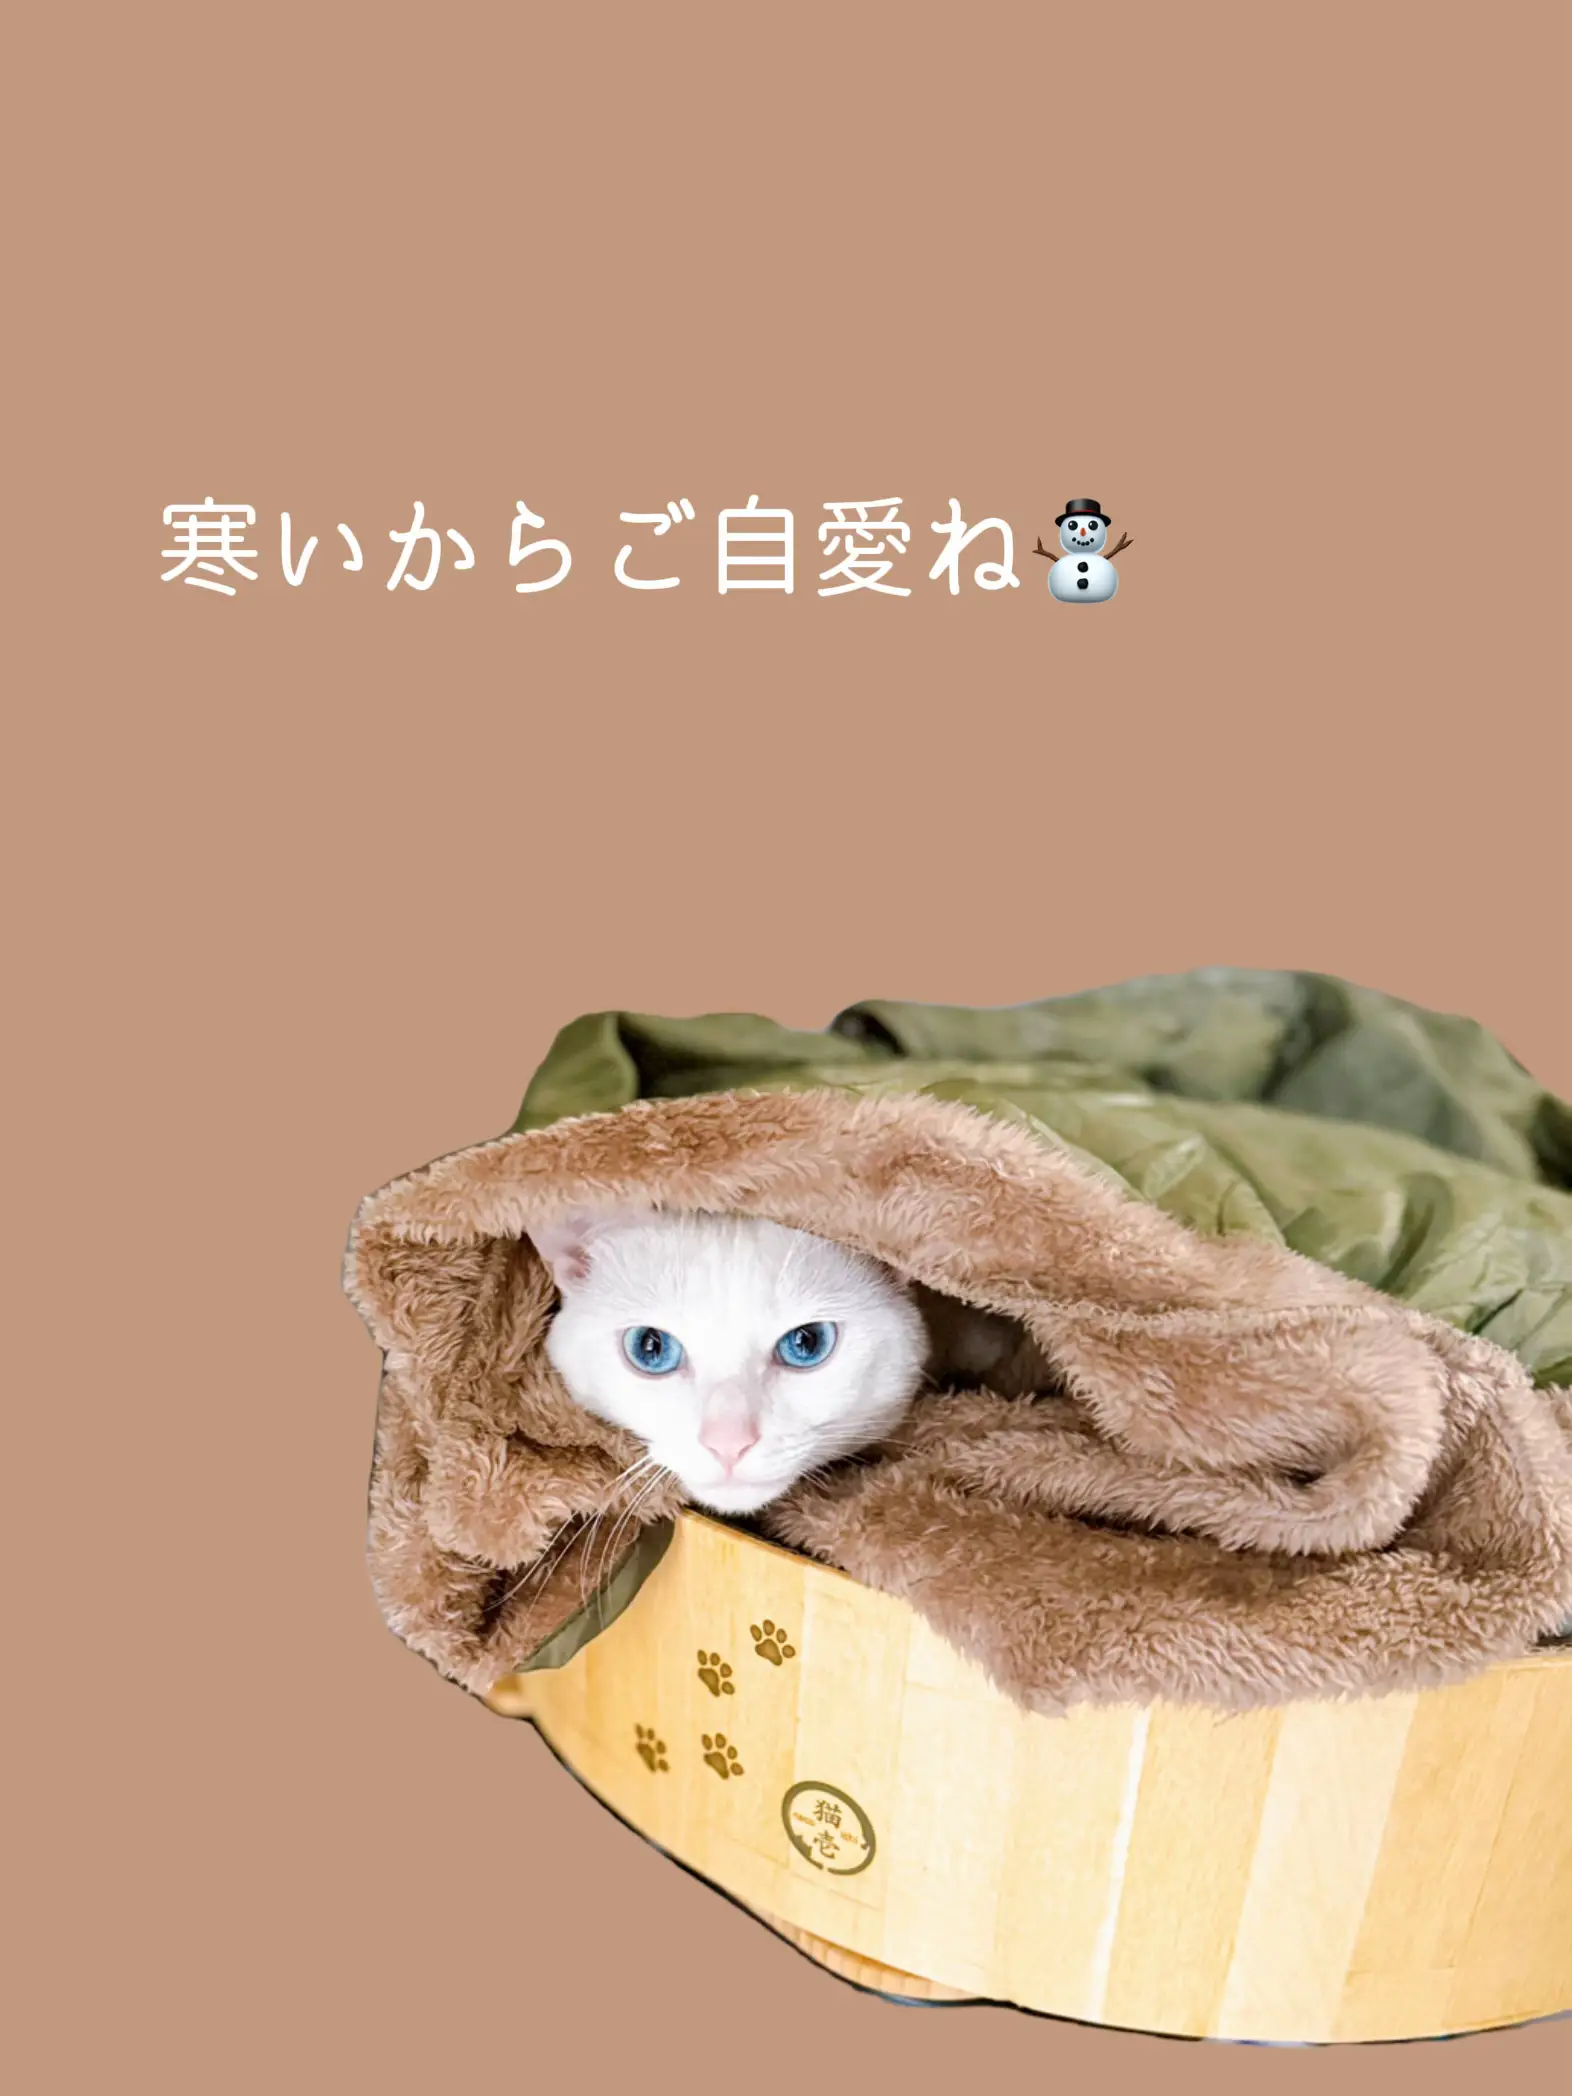 ウチの猫 - Lemon8検索